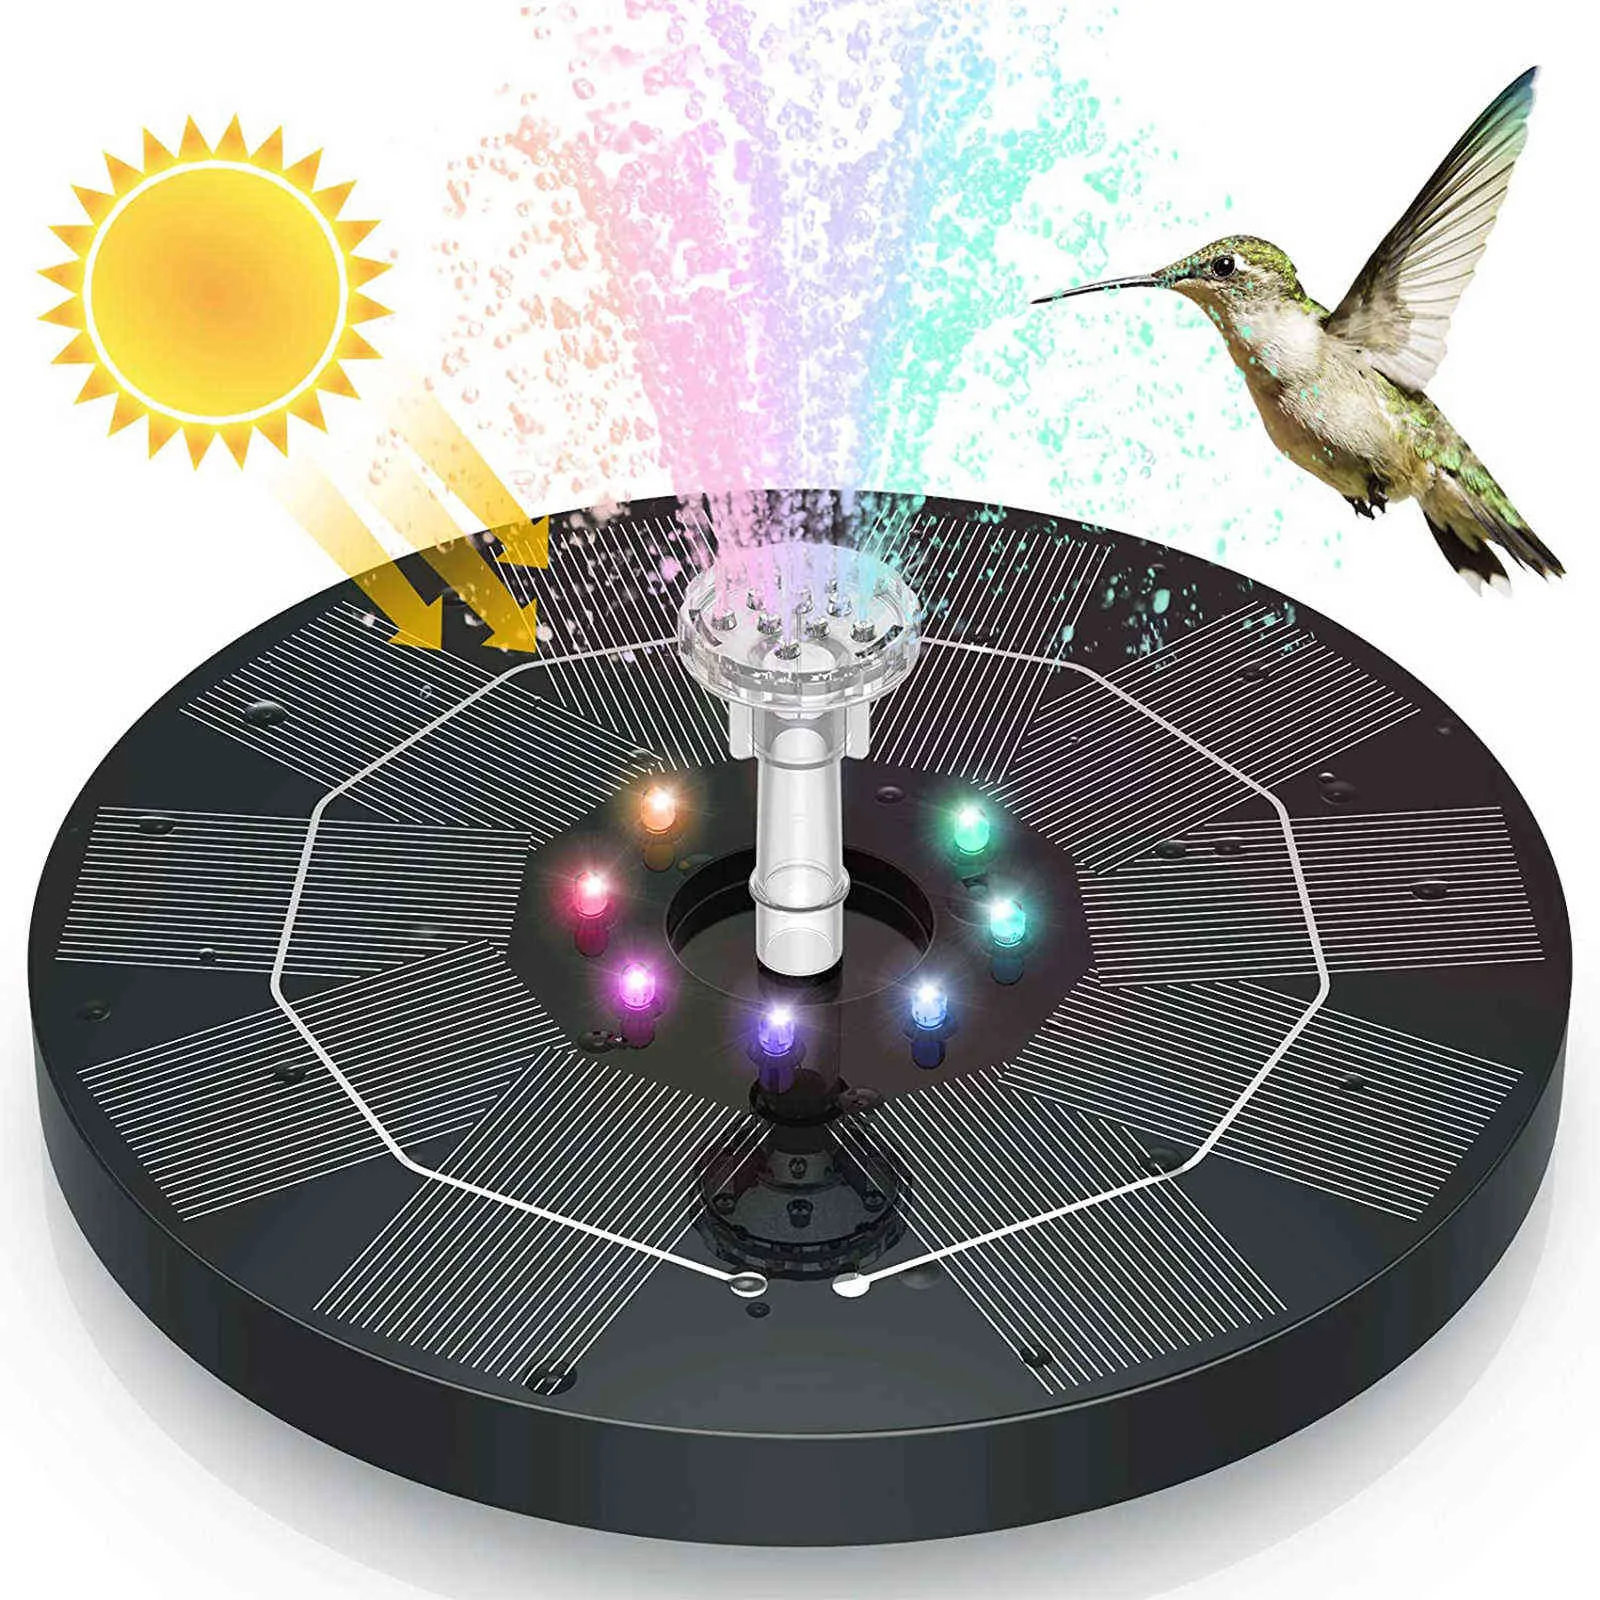 Bomba de fuente solar flotante 6 Estilos de agua de la fuente Panel solar Luces de LED con bañera de pájaros Decoración del césped del jardín Q085874794